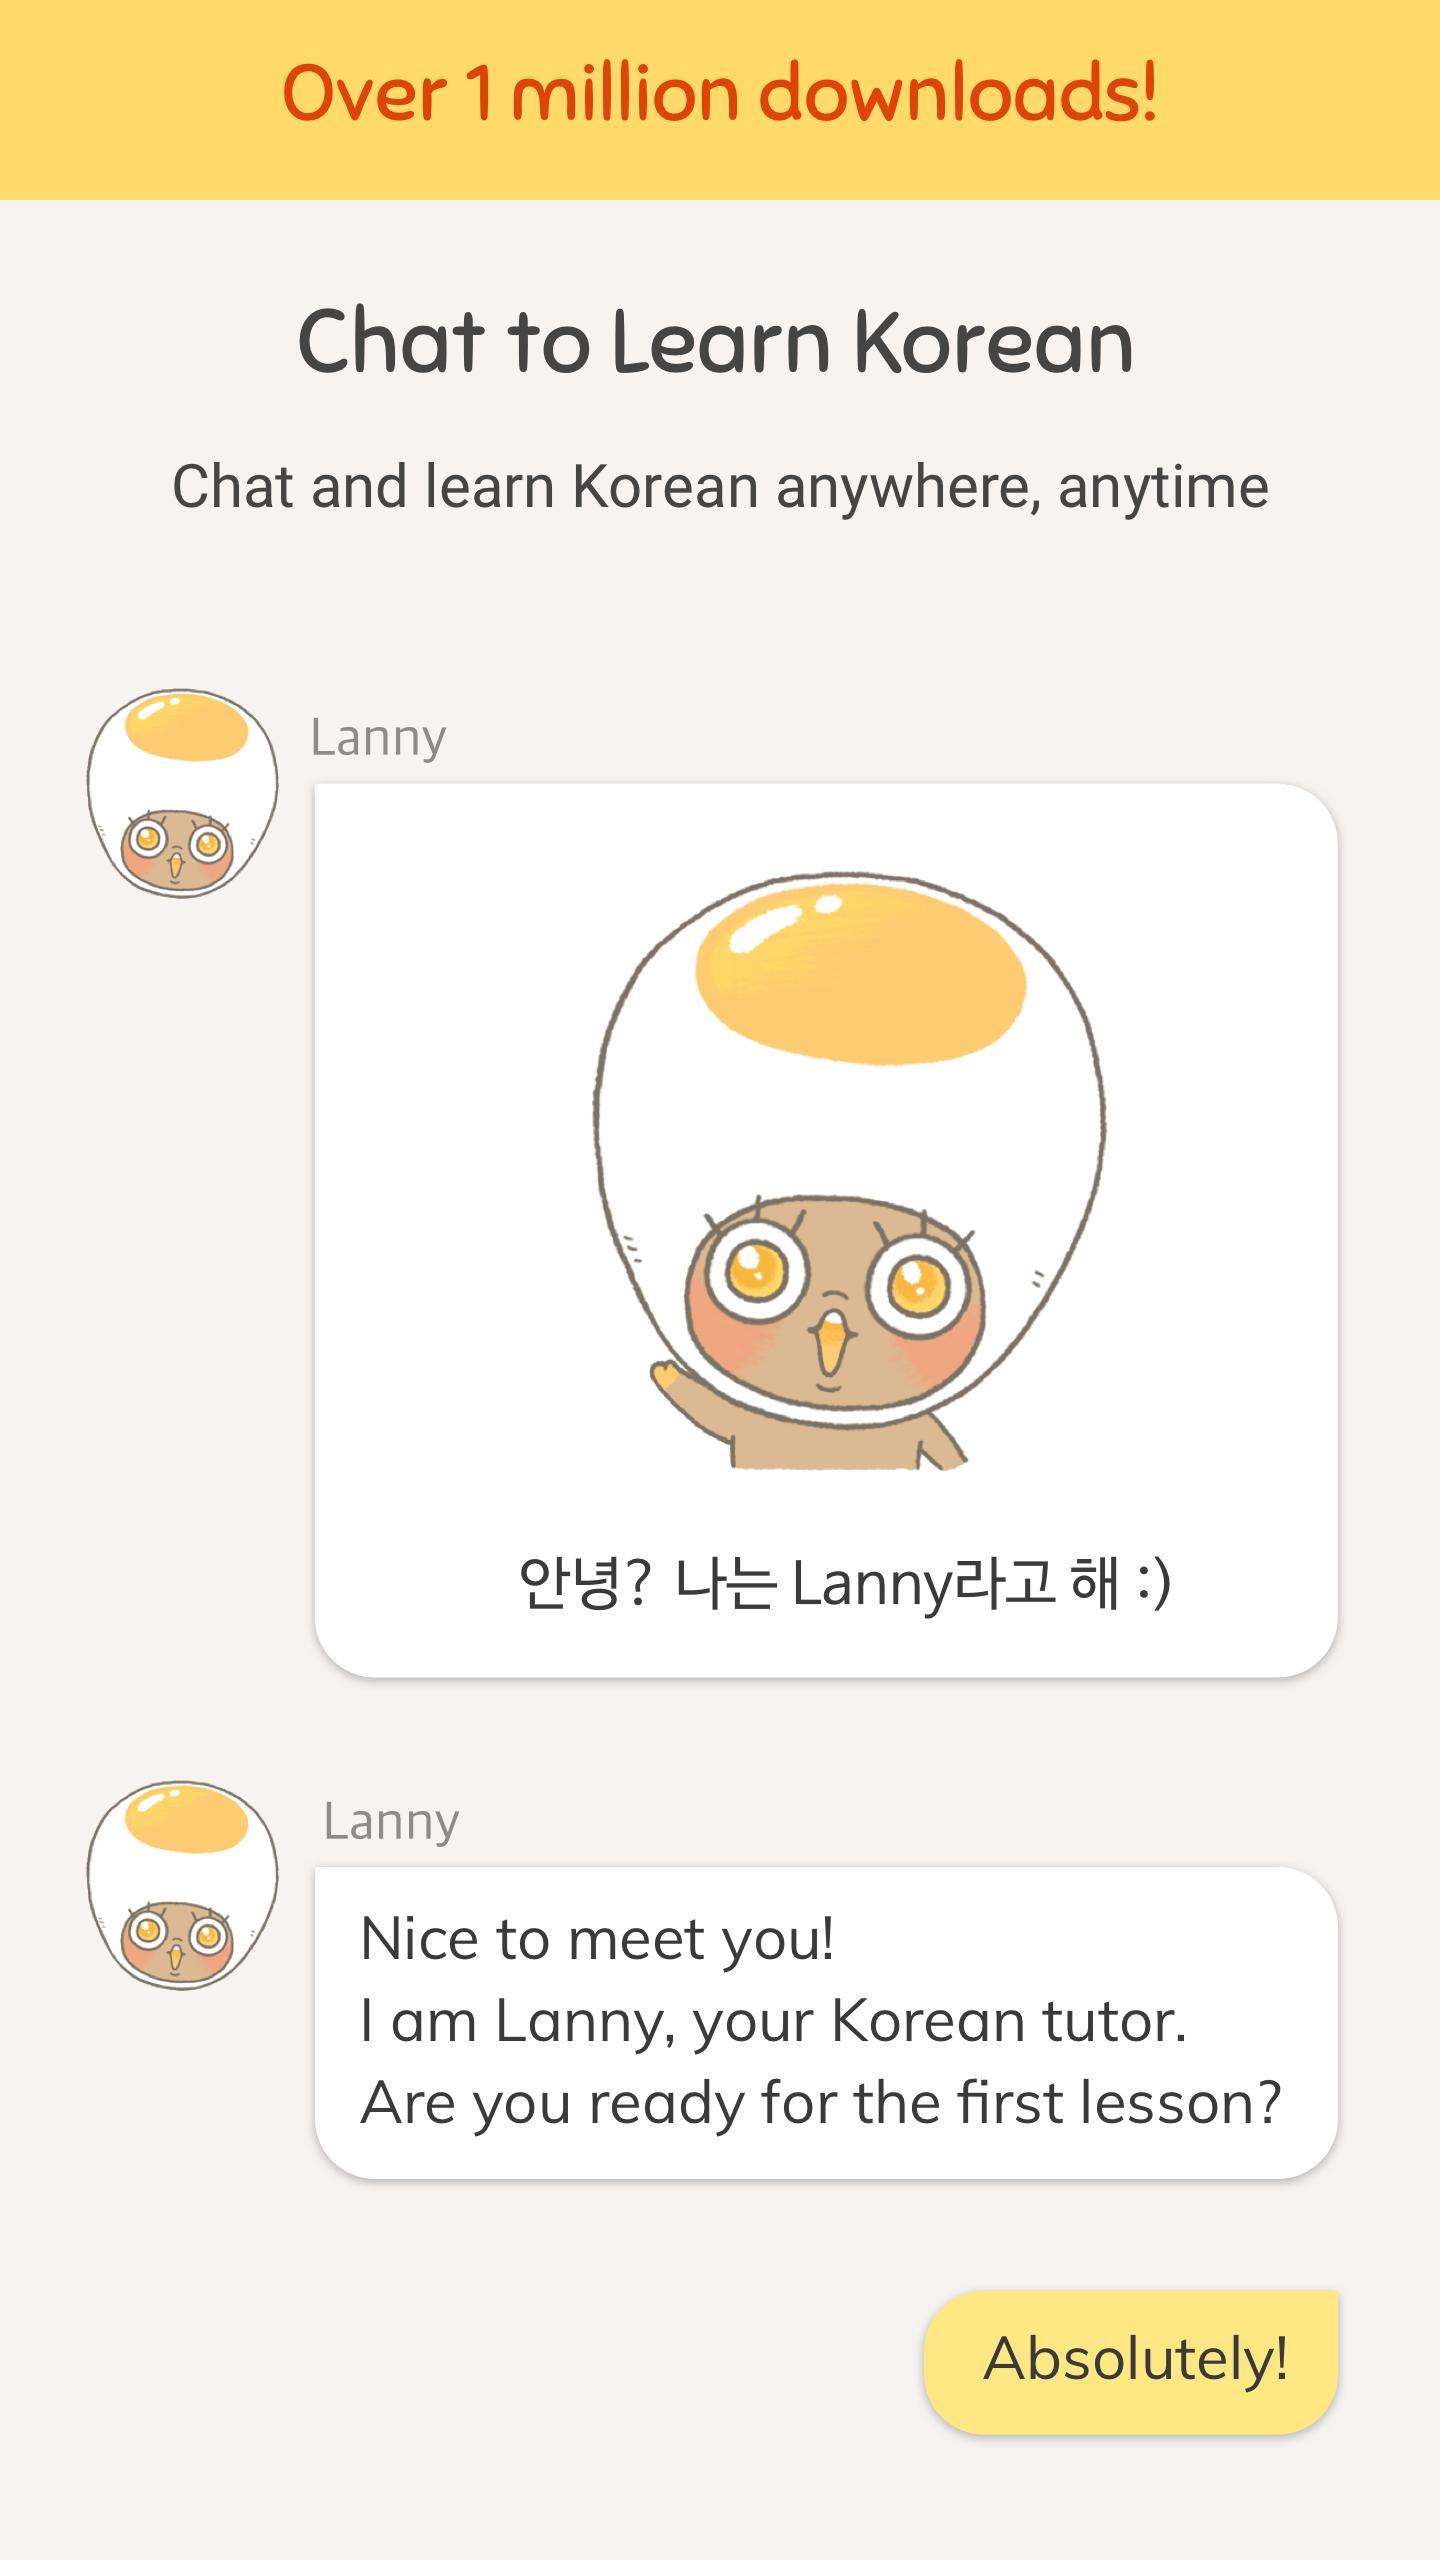 Eggbun: Learn Korean Fun